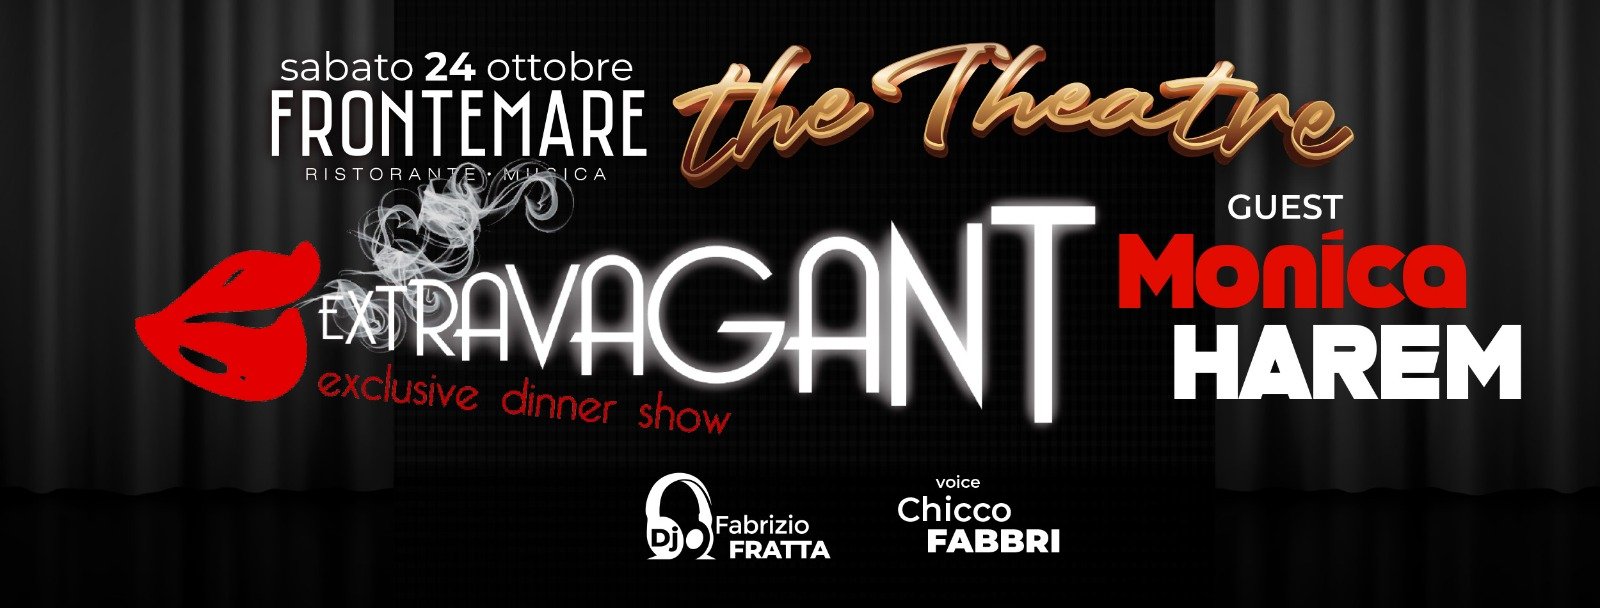 Frontemare Rimini, Extravagant exclusive dinner show